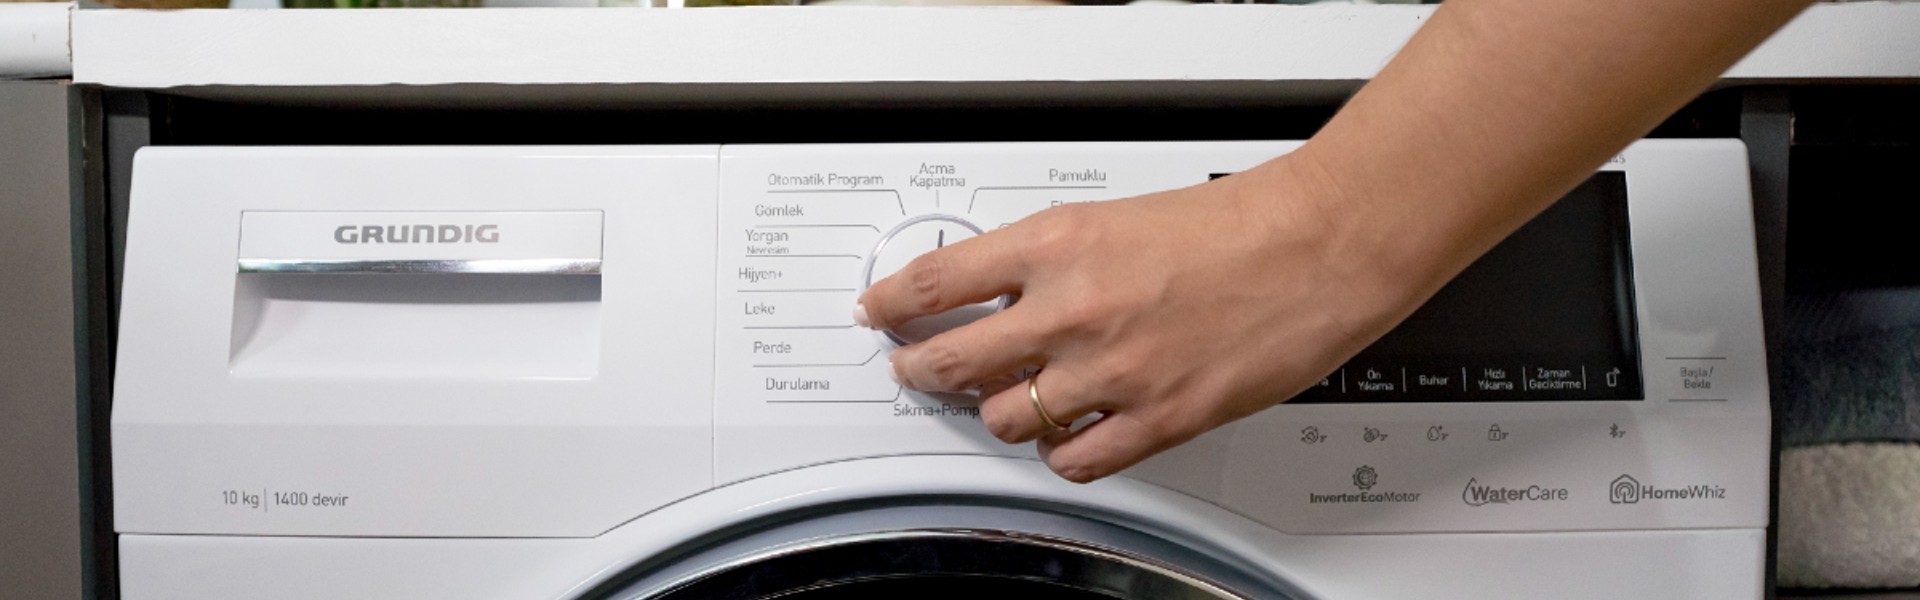 ¿Por qué el programa ECO de la lavadora es más sostenible?